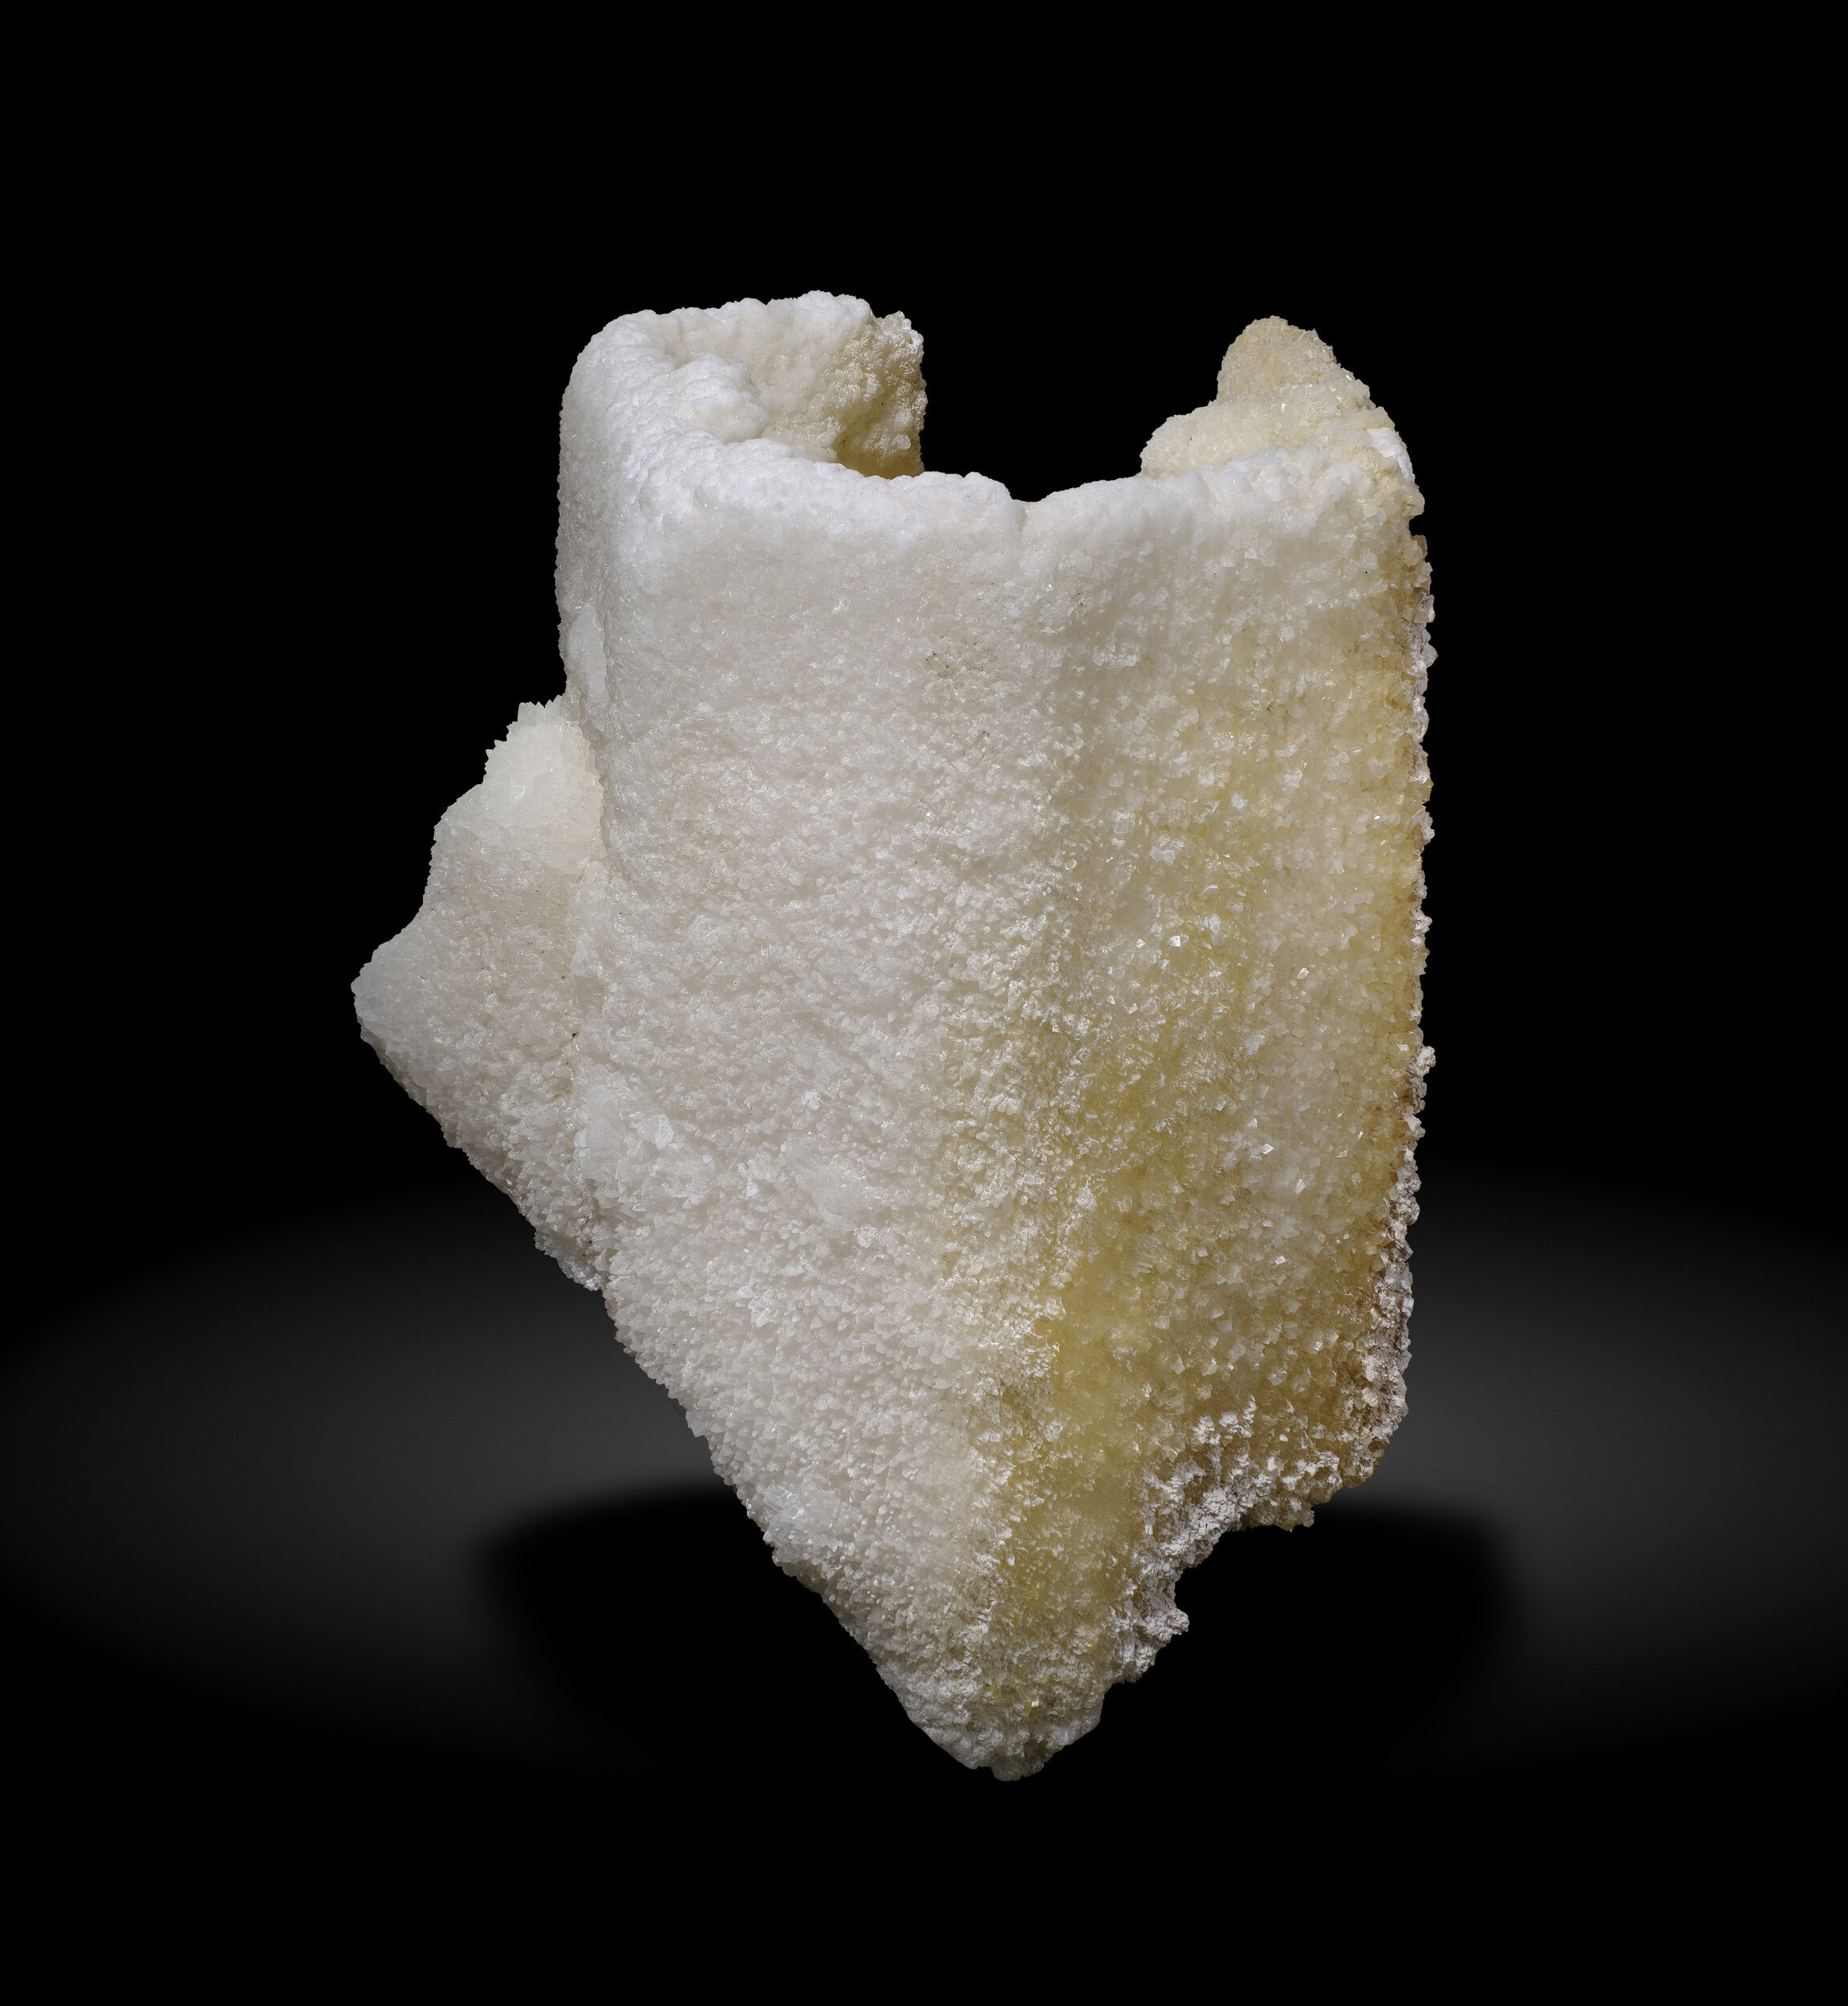 specimens/s_imagesAO0/Calcite-ERY110AO0_6921_r.jpg